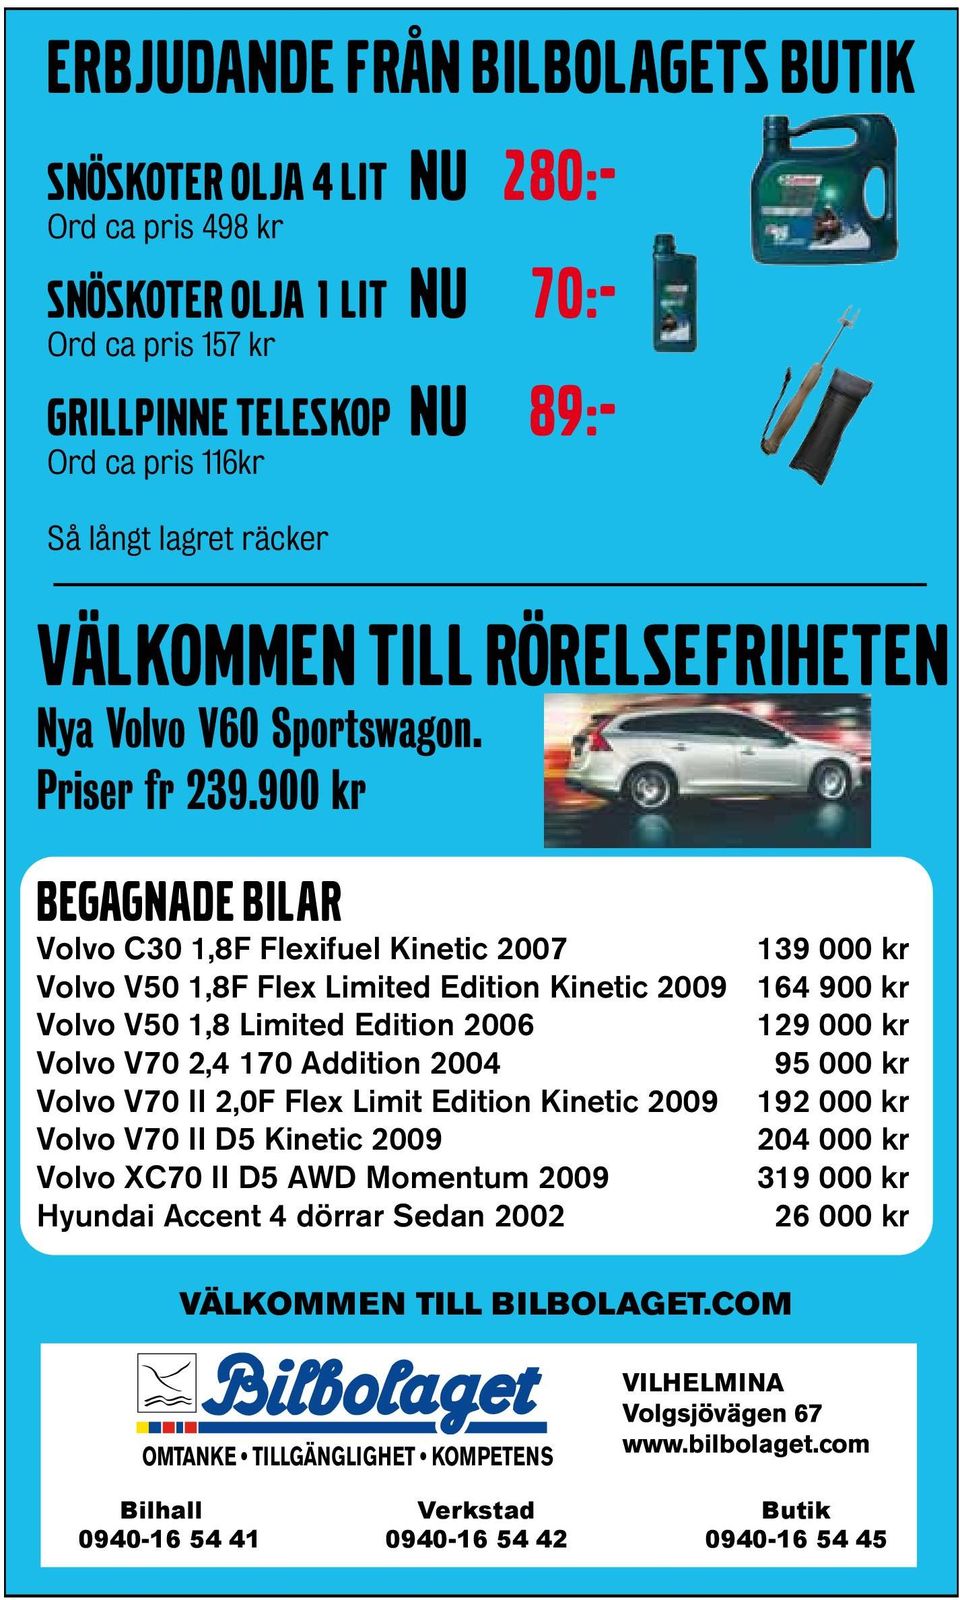 900 kr BEGAGNADE BILAR Volvo C30 1,8F Flexifuel Kinetic 2007 139 000 kr Volvo V50 1,8F Flex Limited Edition Kinetic 2009 164 900 kr Volvo V50 1,8 Limited Edition 2006 129 000 kr Volvo V70 2,4 170